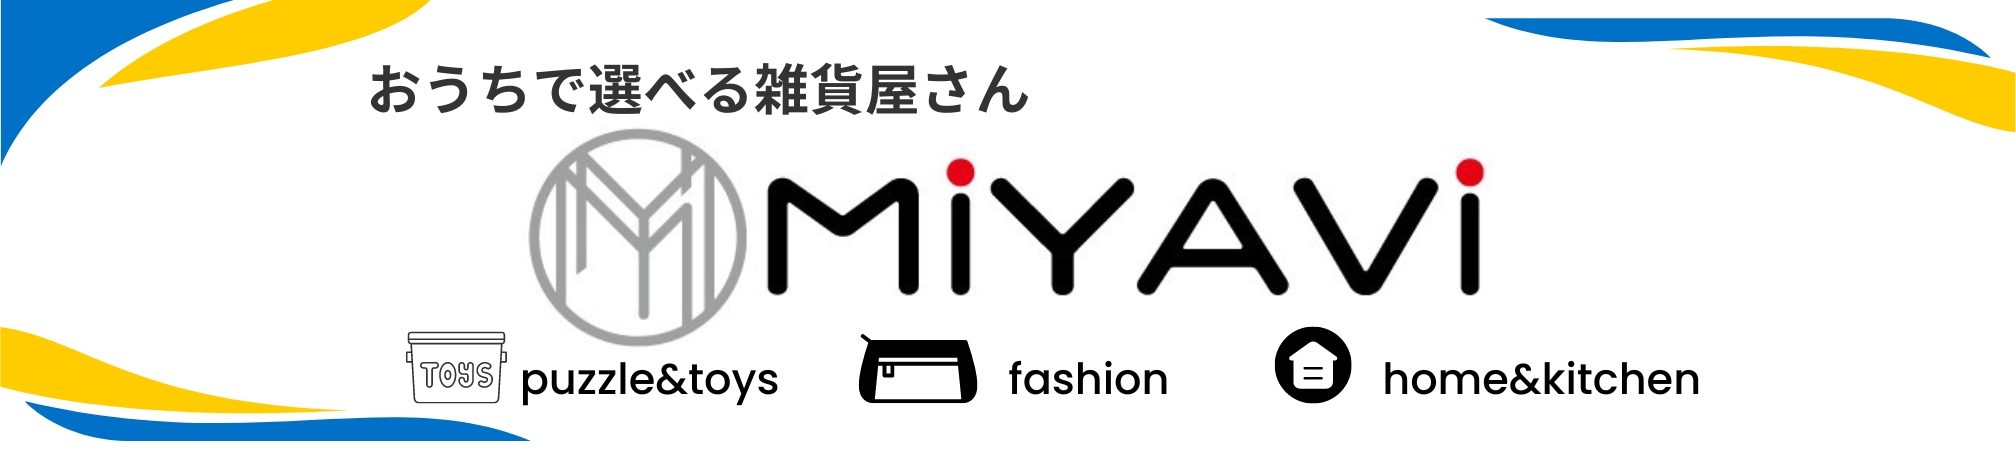 miyavi store Yahoo!店 ヘッダー画像